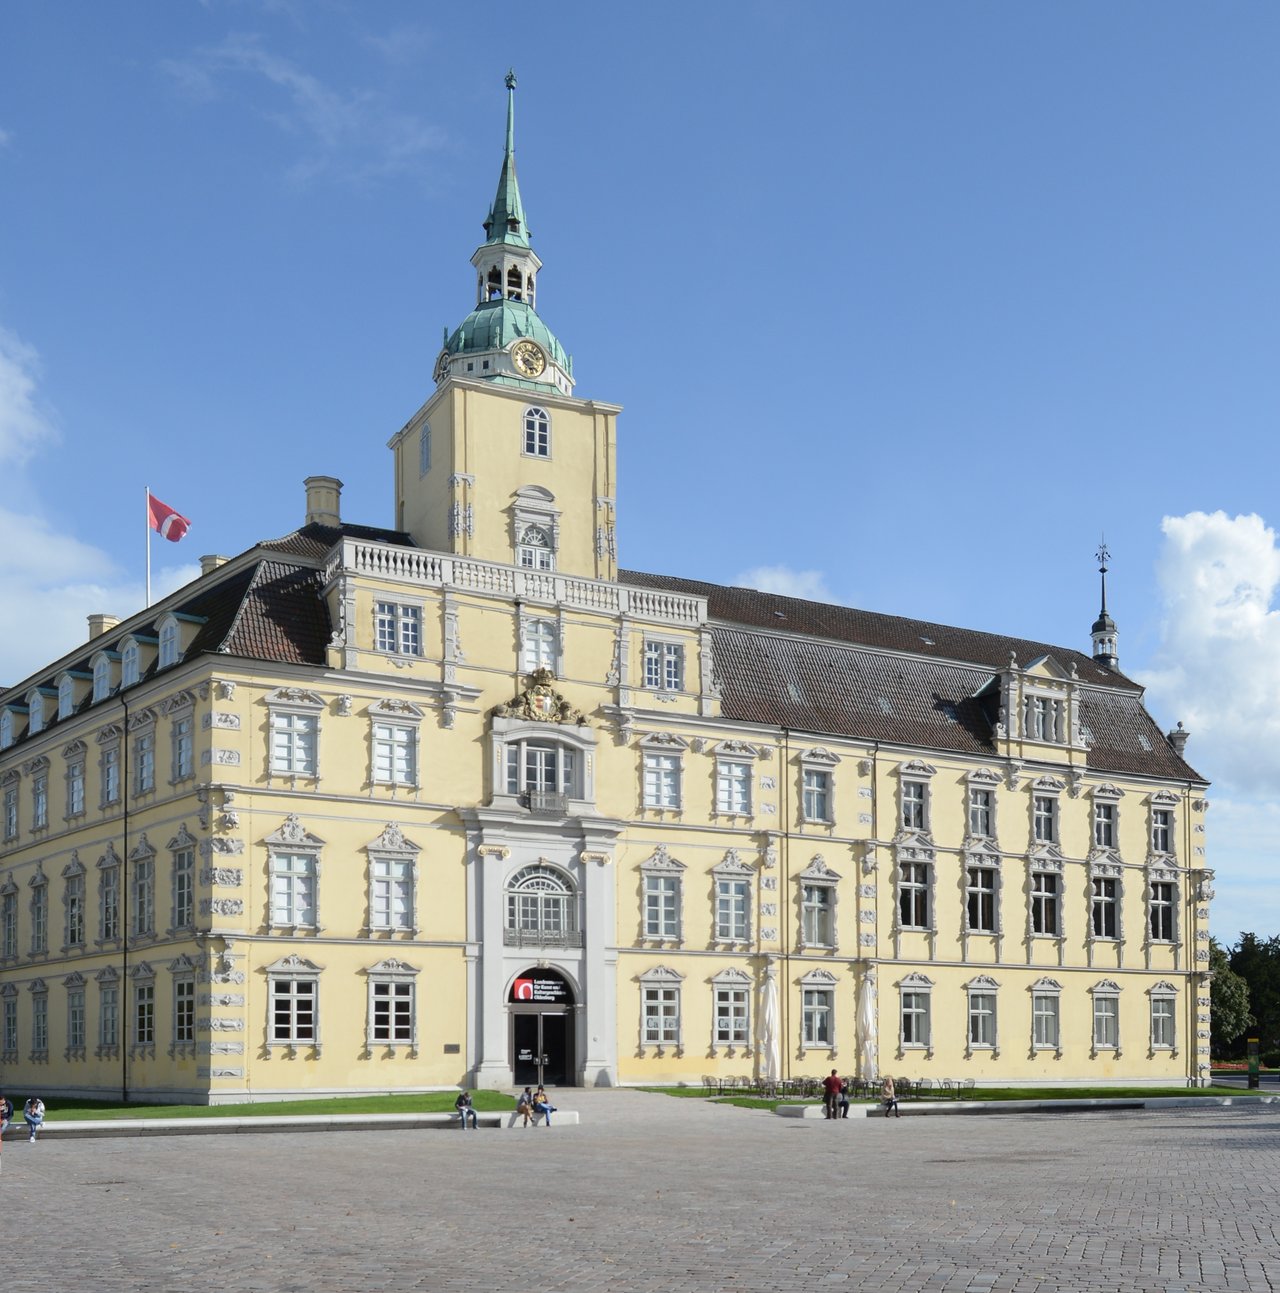 Buitenfoto van kasteel Oldenburg.